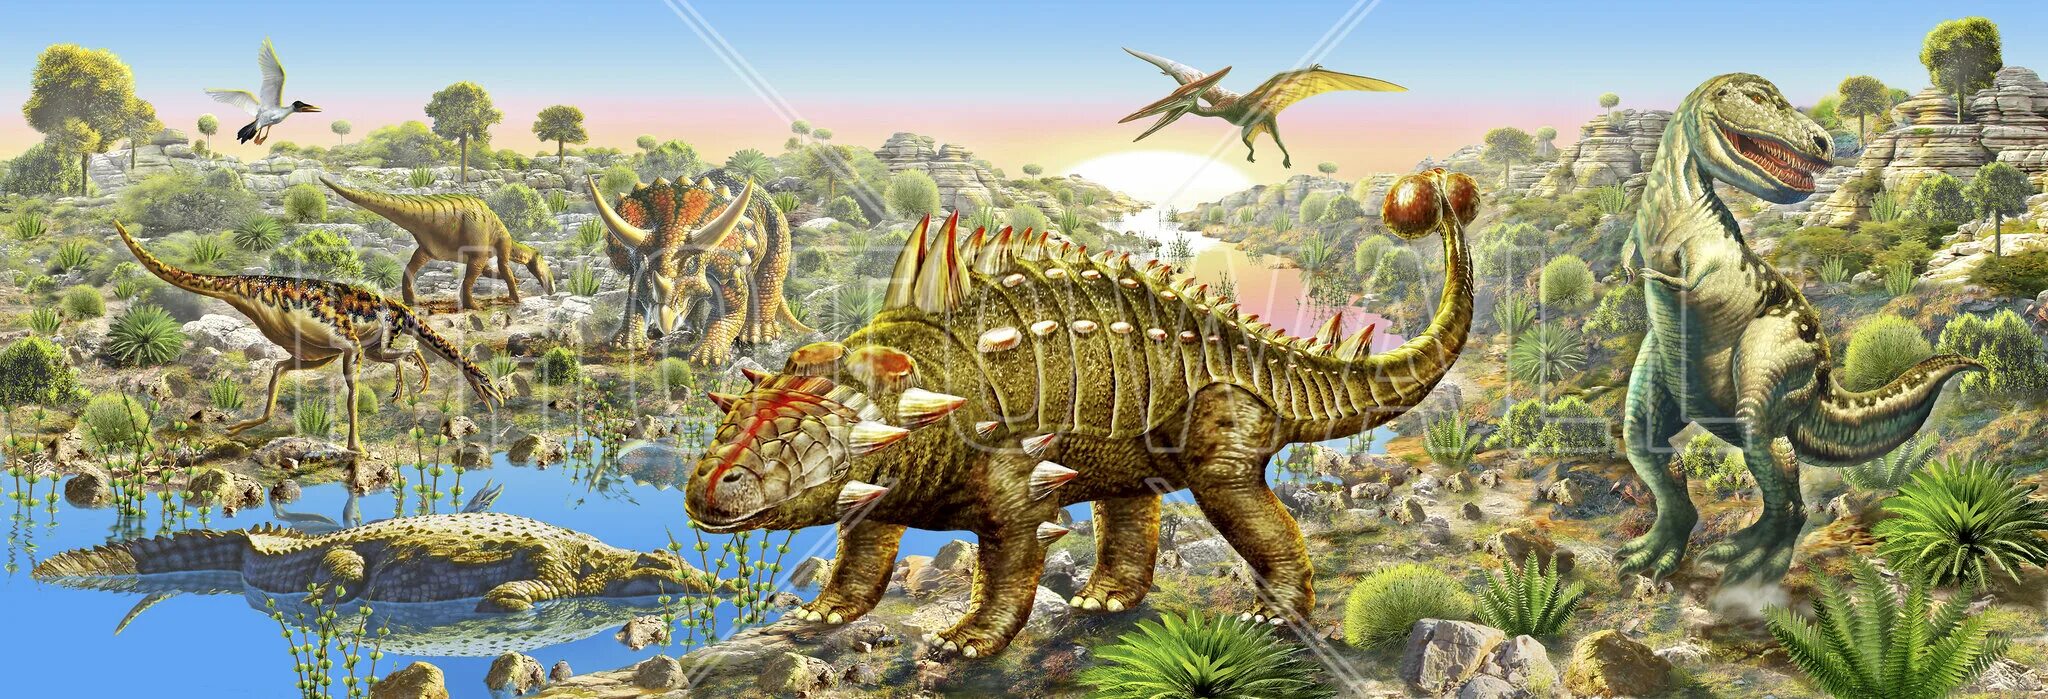 Пейзаж с динозаврами. Динозавры панорама. Мир динозавров. Динозавры фон. Урок мир динозавров